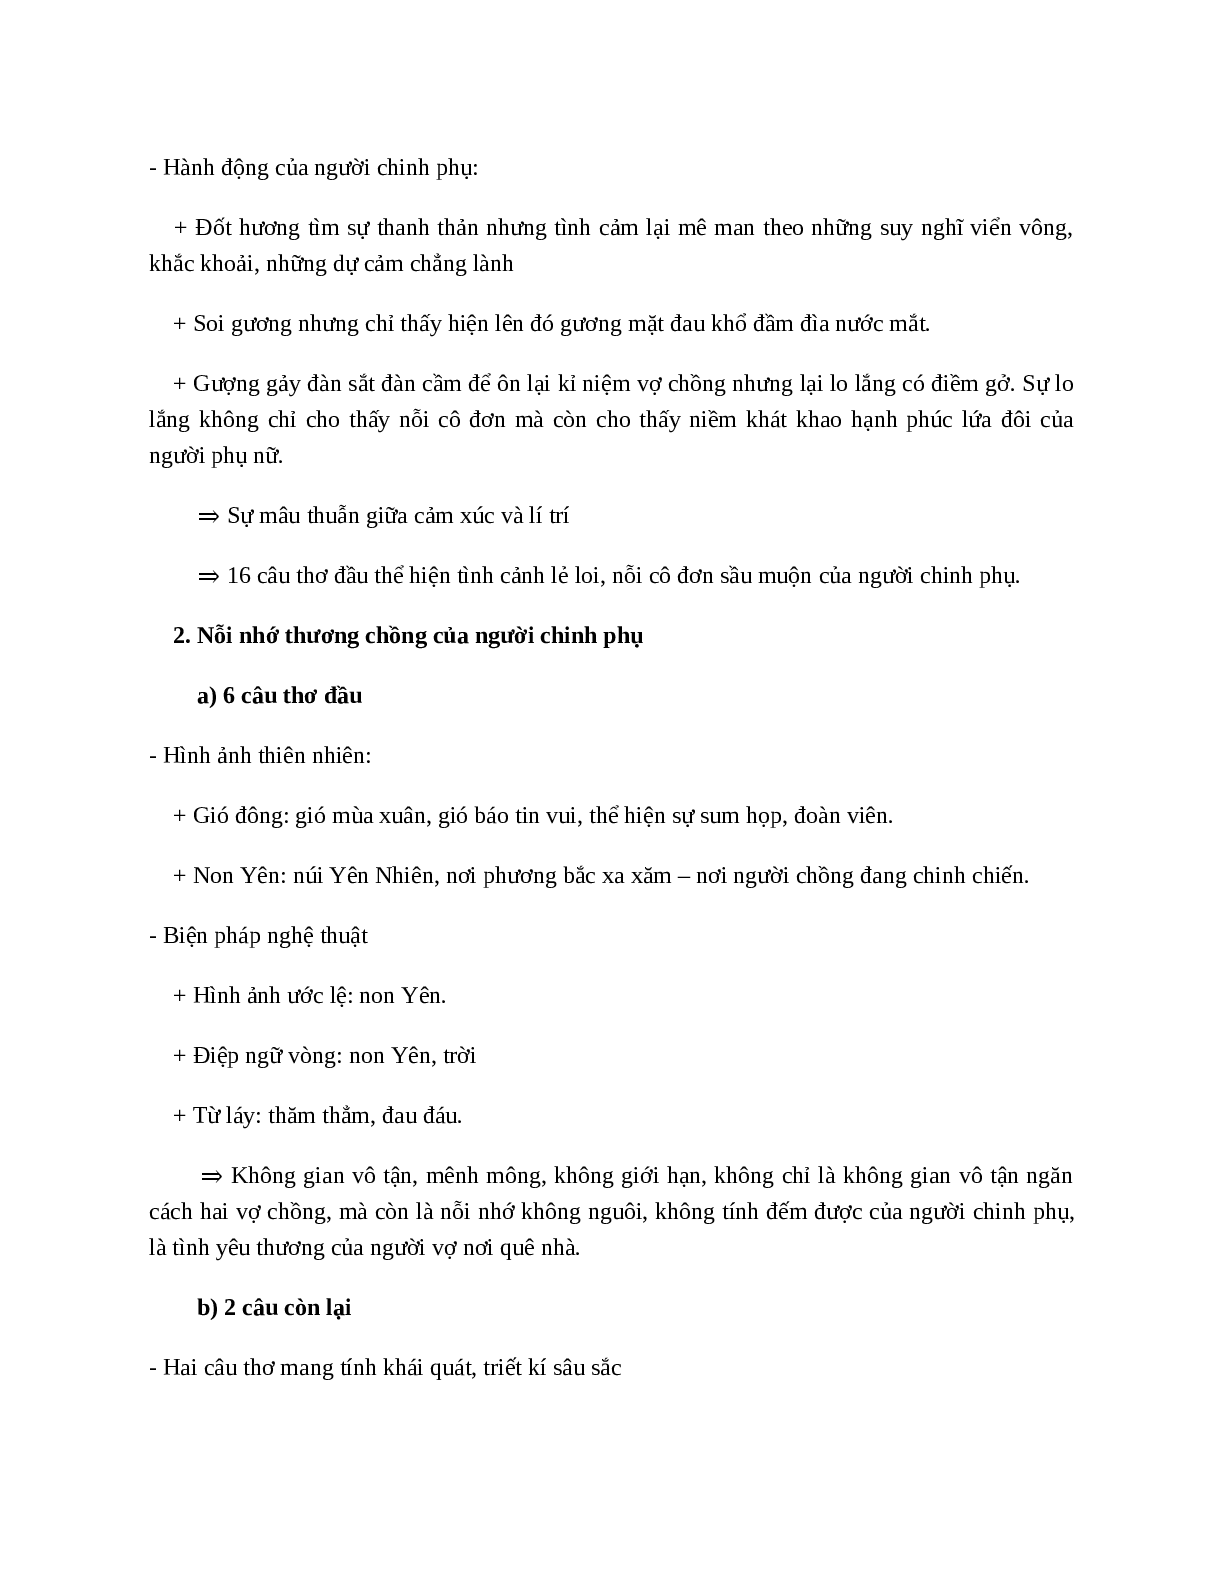 Tình cảnh lẻ loi của người chinh phụ (Trích Chinh phụ ngâm - Đặng Trần Côn) - nội dung, dàn ý phân tích, bố cục, tóm tắt (trang 7)